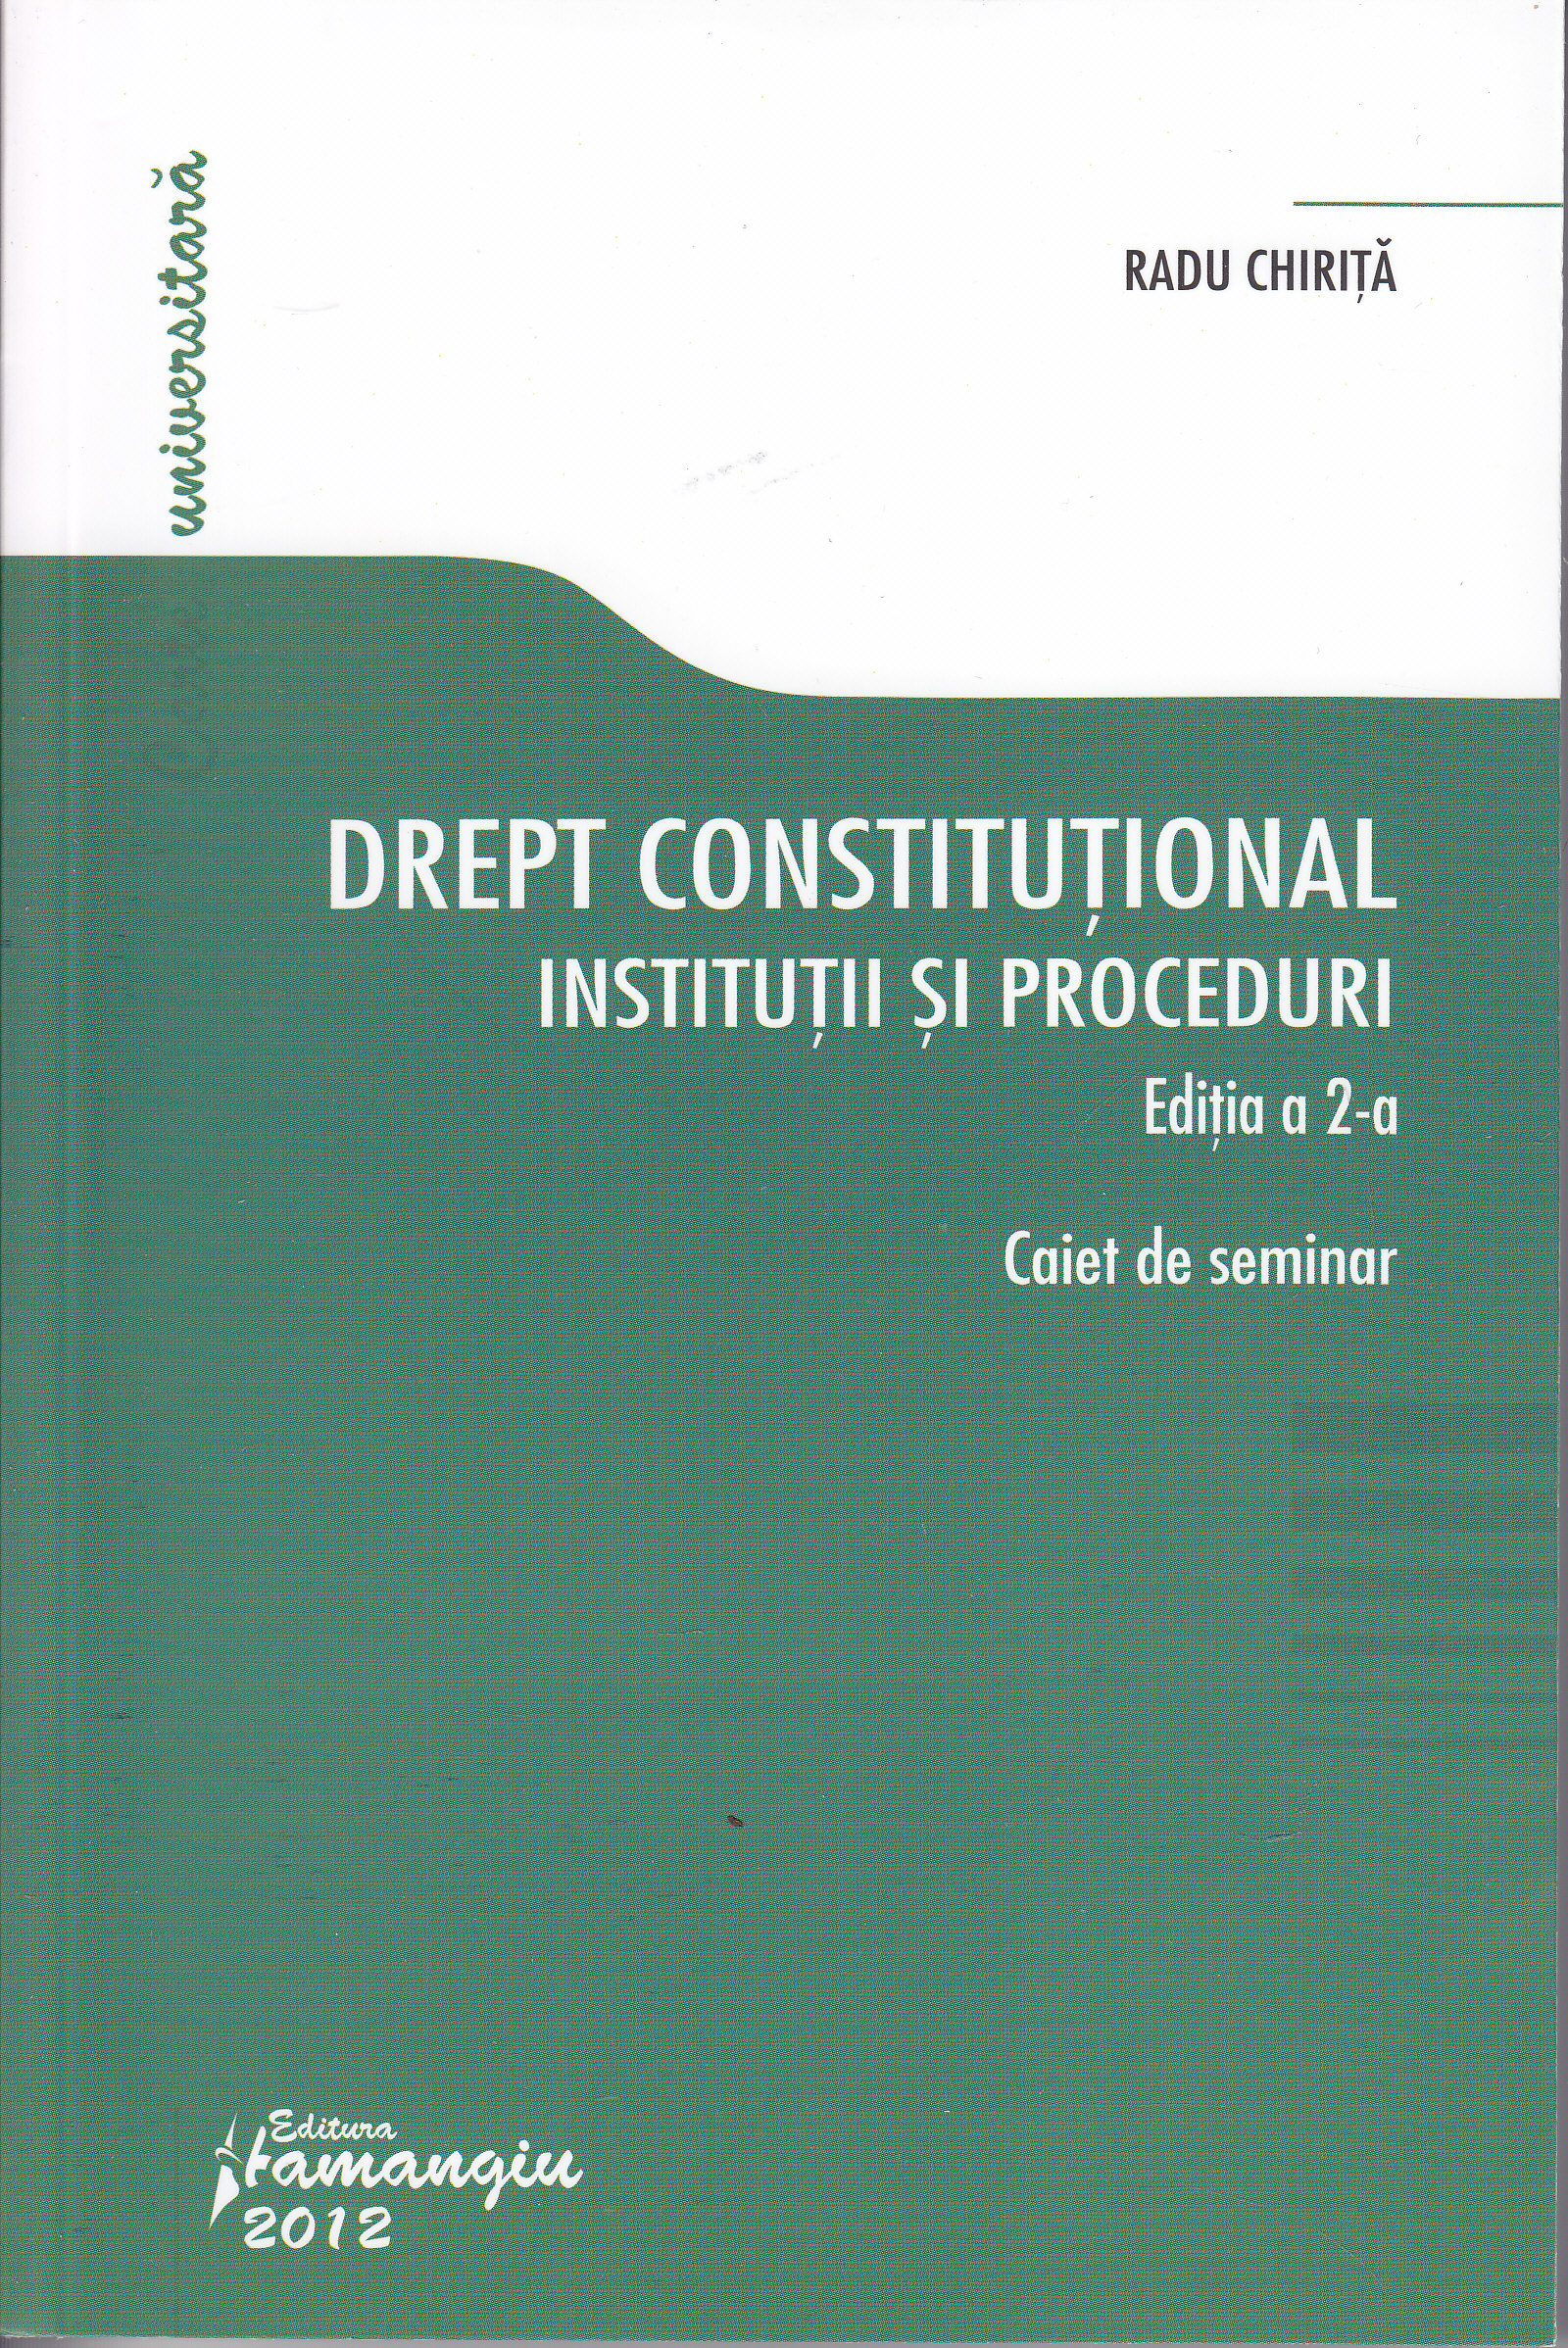 Drept constitutional. Institutii si proceduri ed. 2 - Caiet de seminar - Radu Chirita